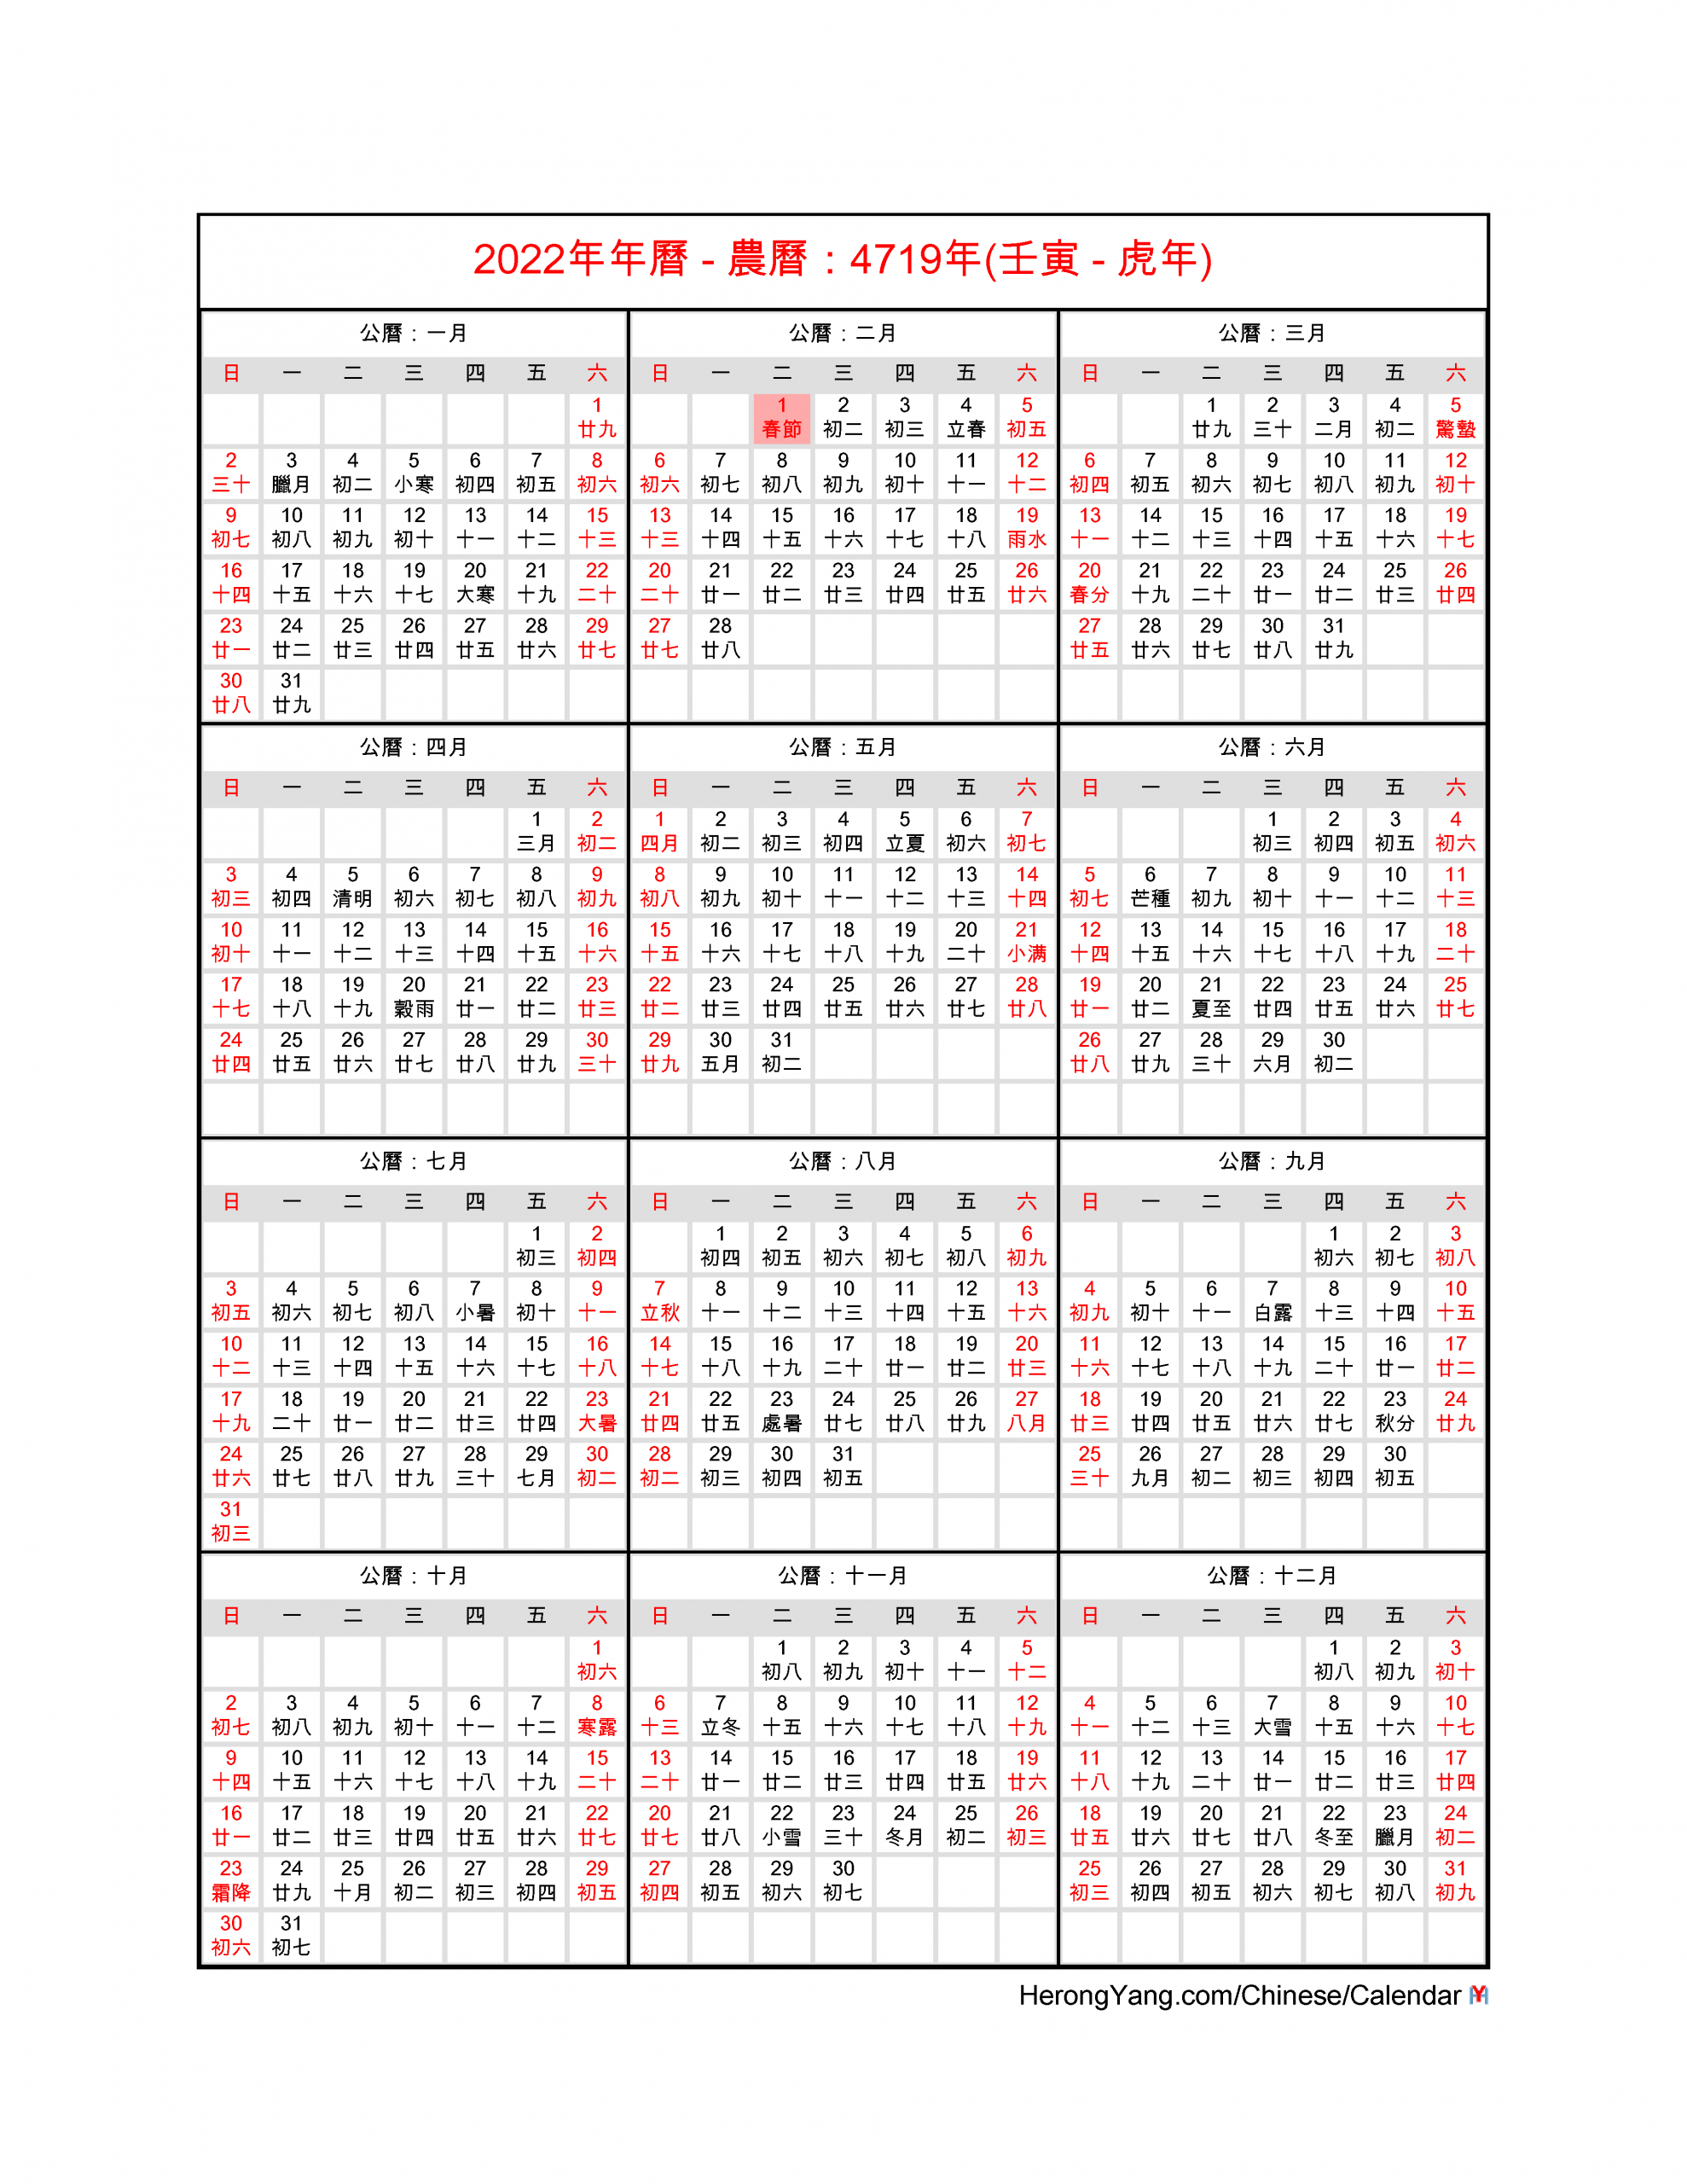 Lunar To Gregorian Calendar 2022 - August Calendar 2022